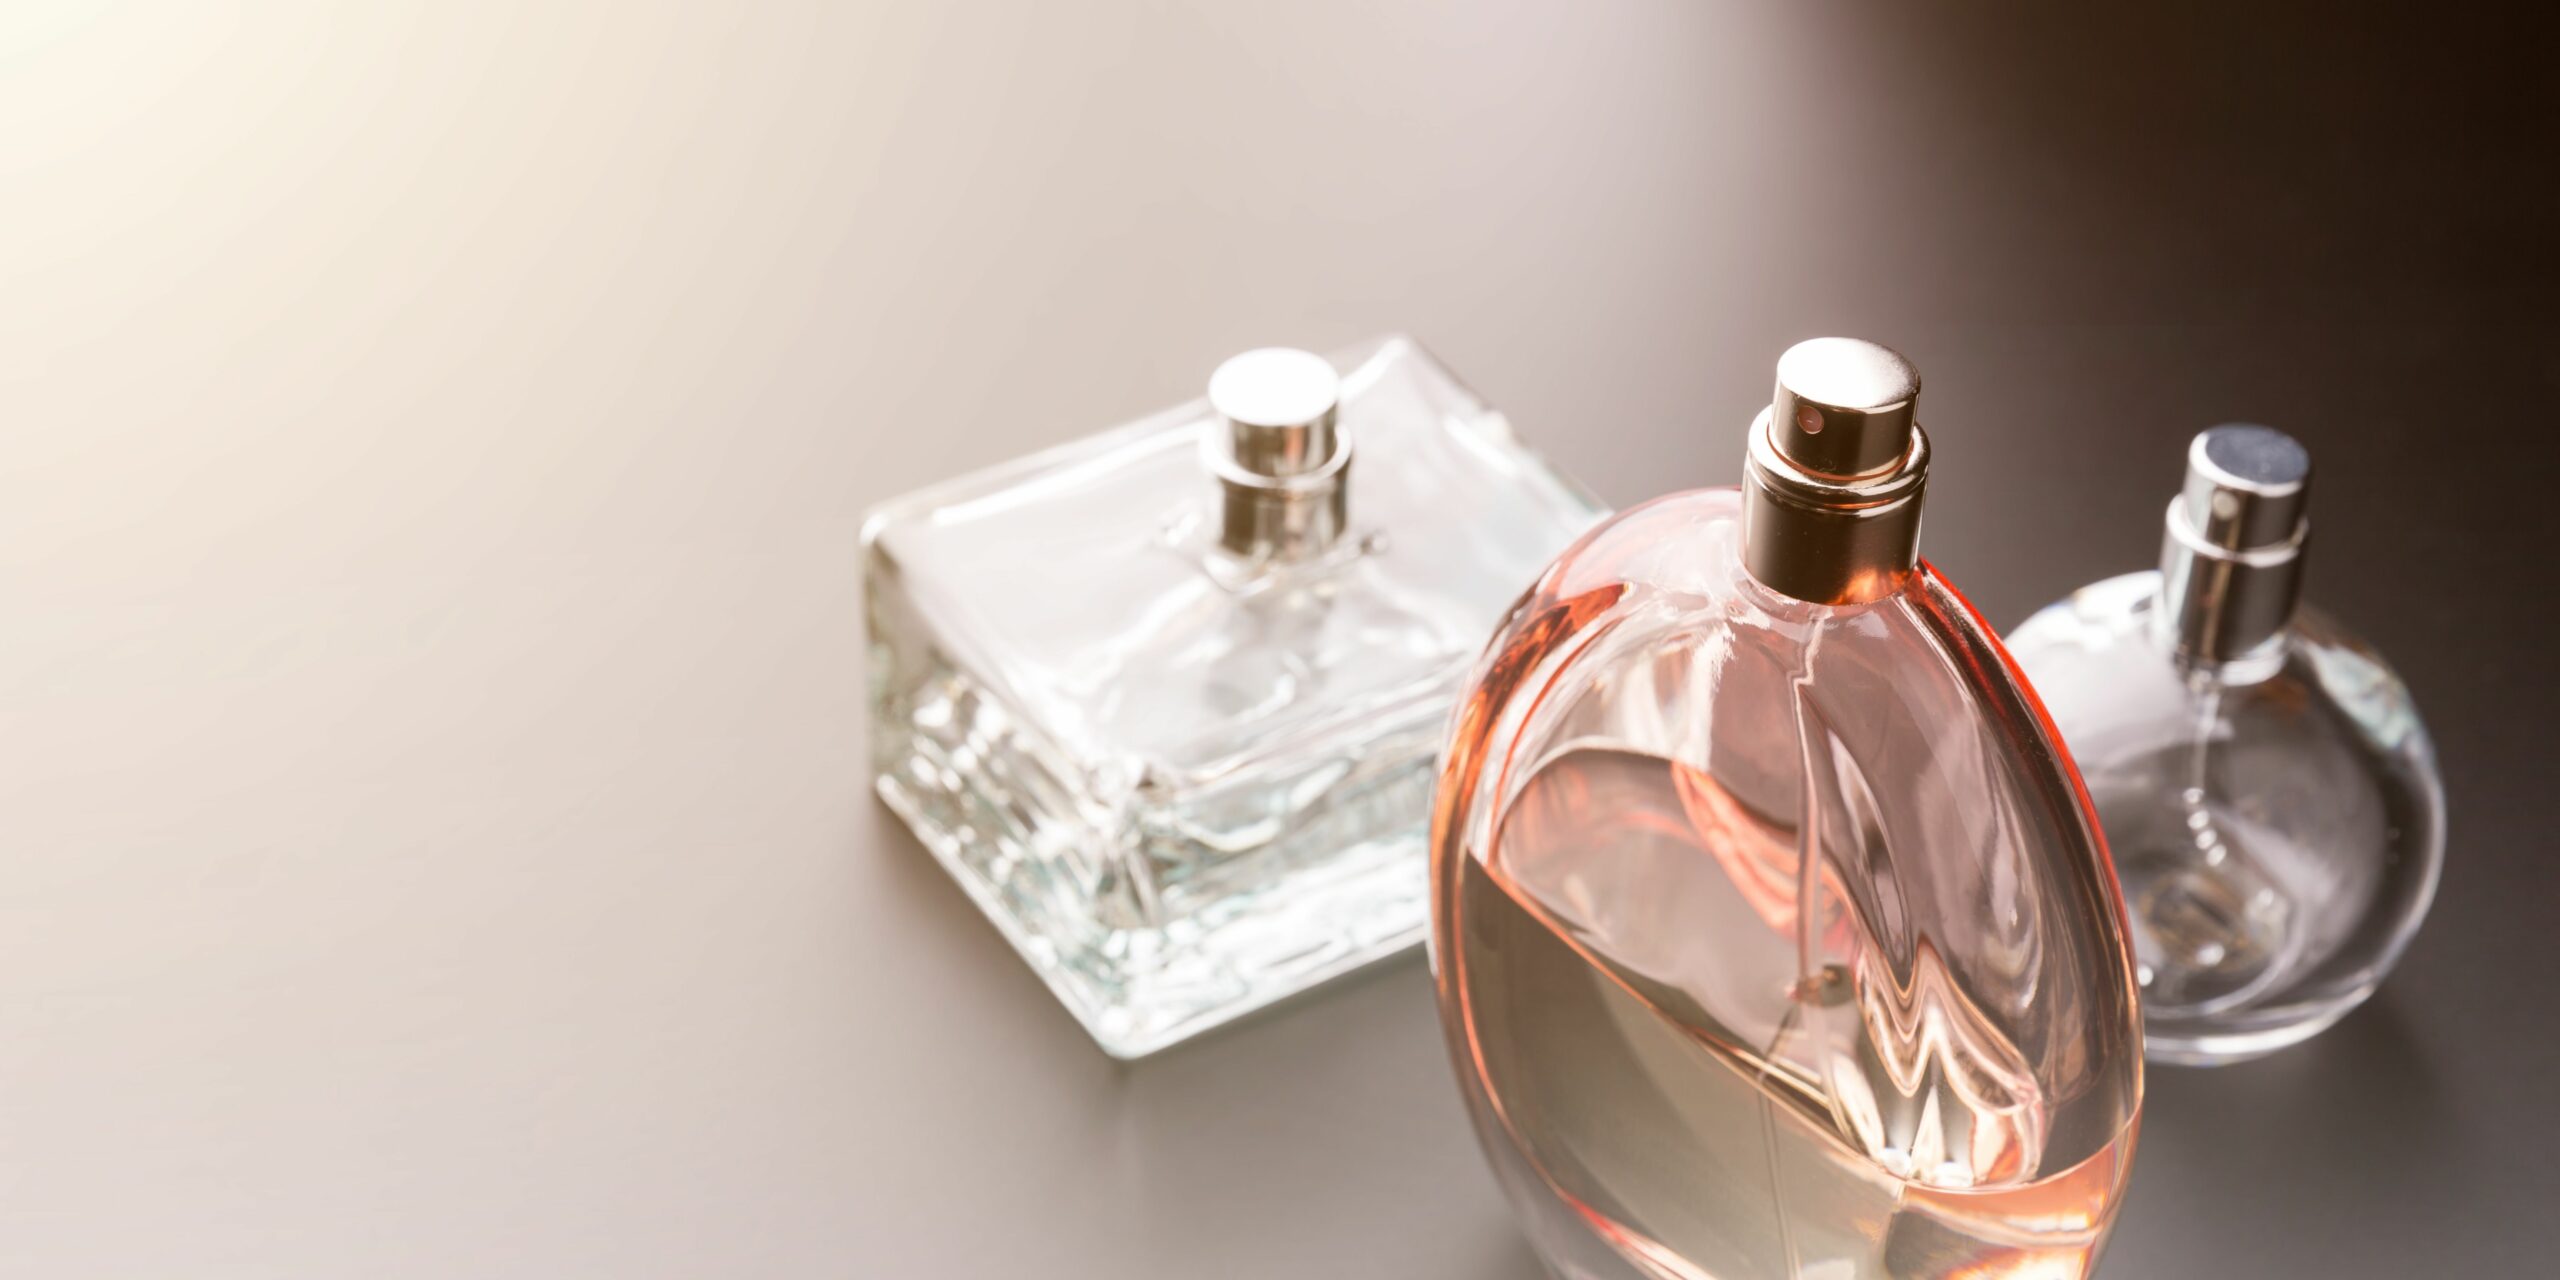 Melhores perfumes femininos: Escolha o ideal para você